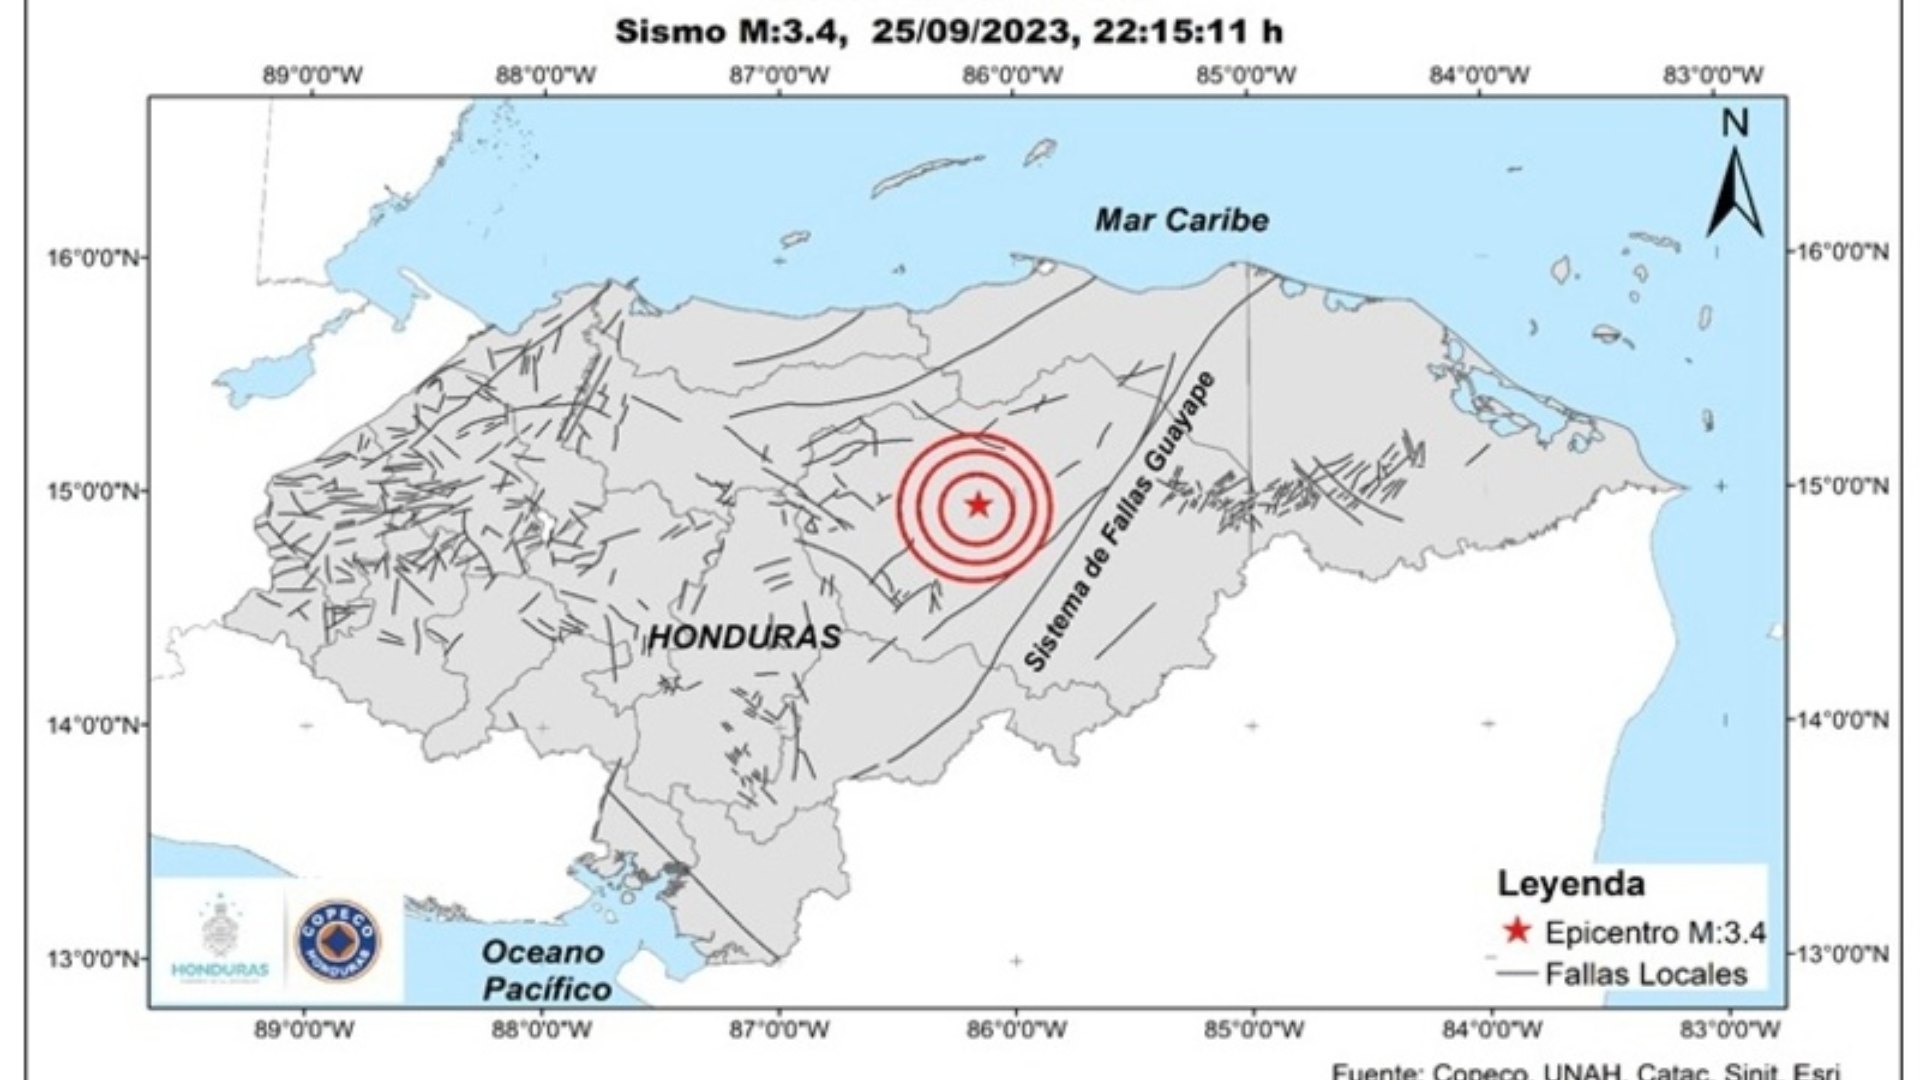 En la noche de este martes, un sismo de magnitud 3.3 en la escala de Richter sacudió el municipio de Gualaco, situado en el departamento de Olancho.